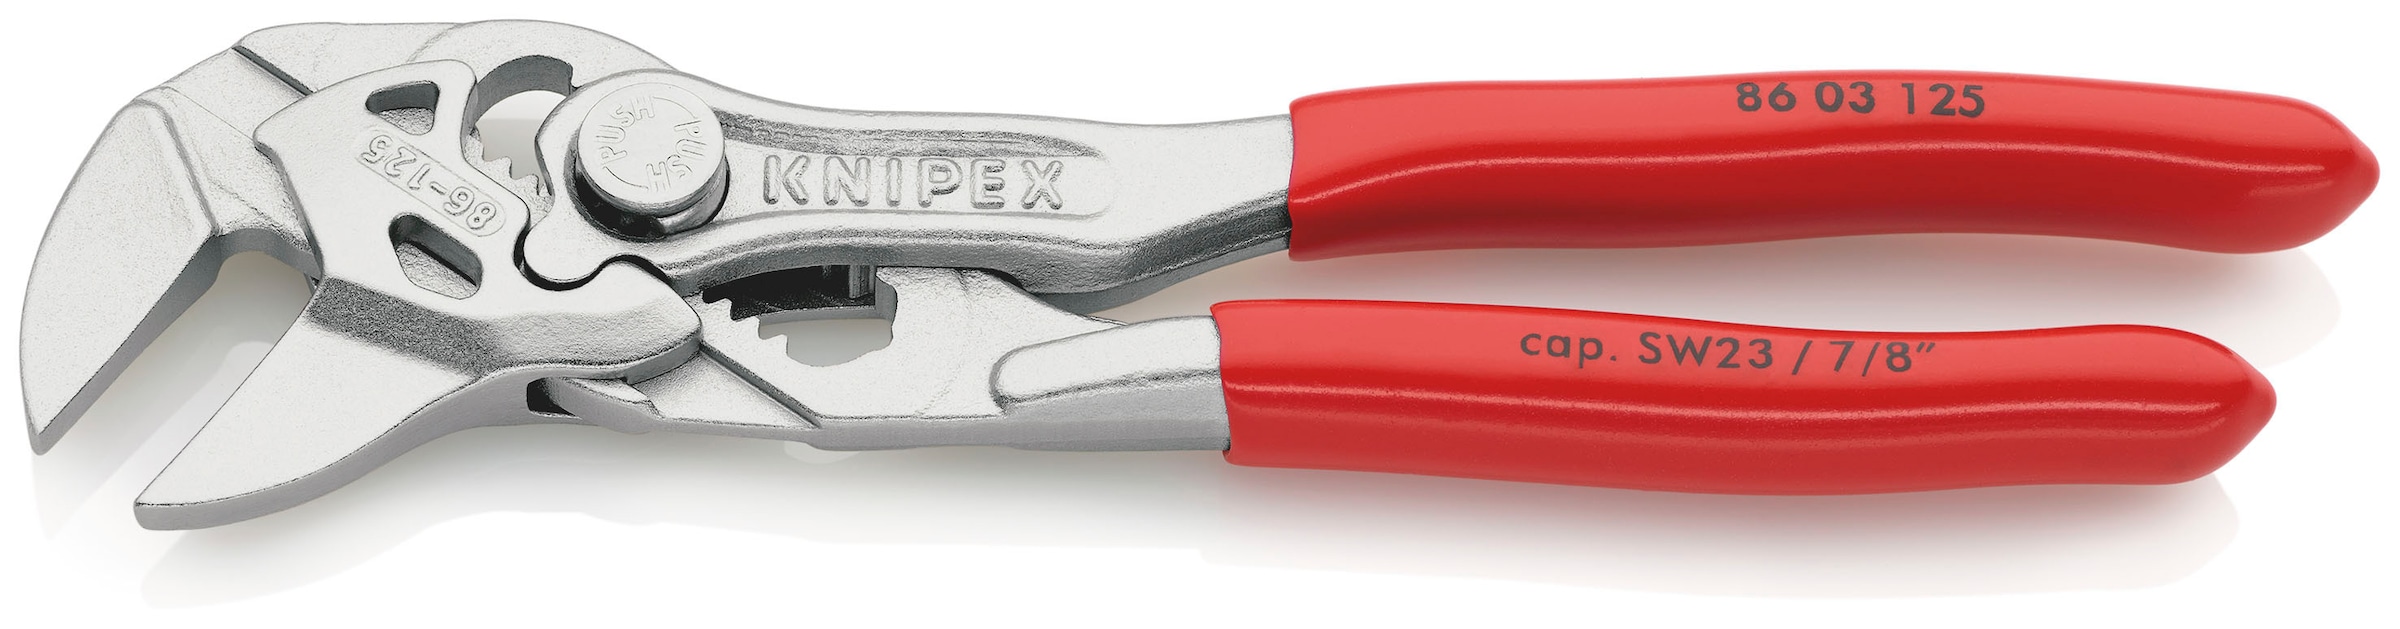 Knipex Zangenschlüssel »86 03 125 Mini, Zange und Schraubenschlüssel in einem Werkzeug«, (1 tlg.), verchromt, mit Kunststoff überzogen 125 mm